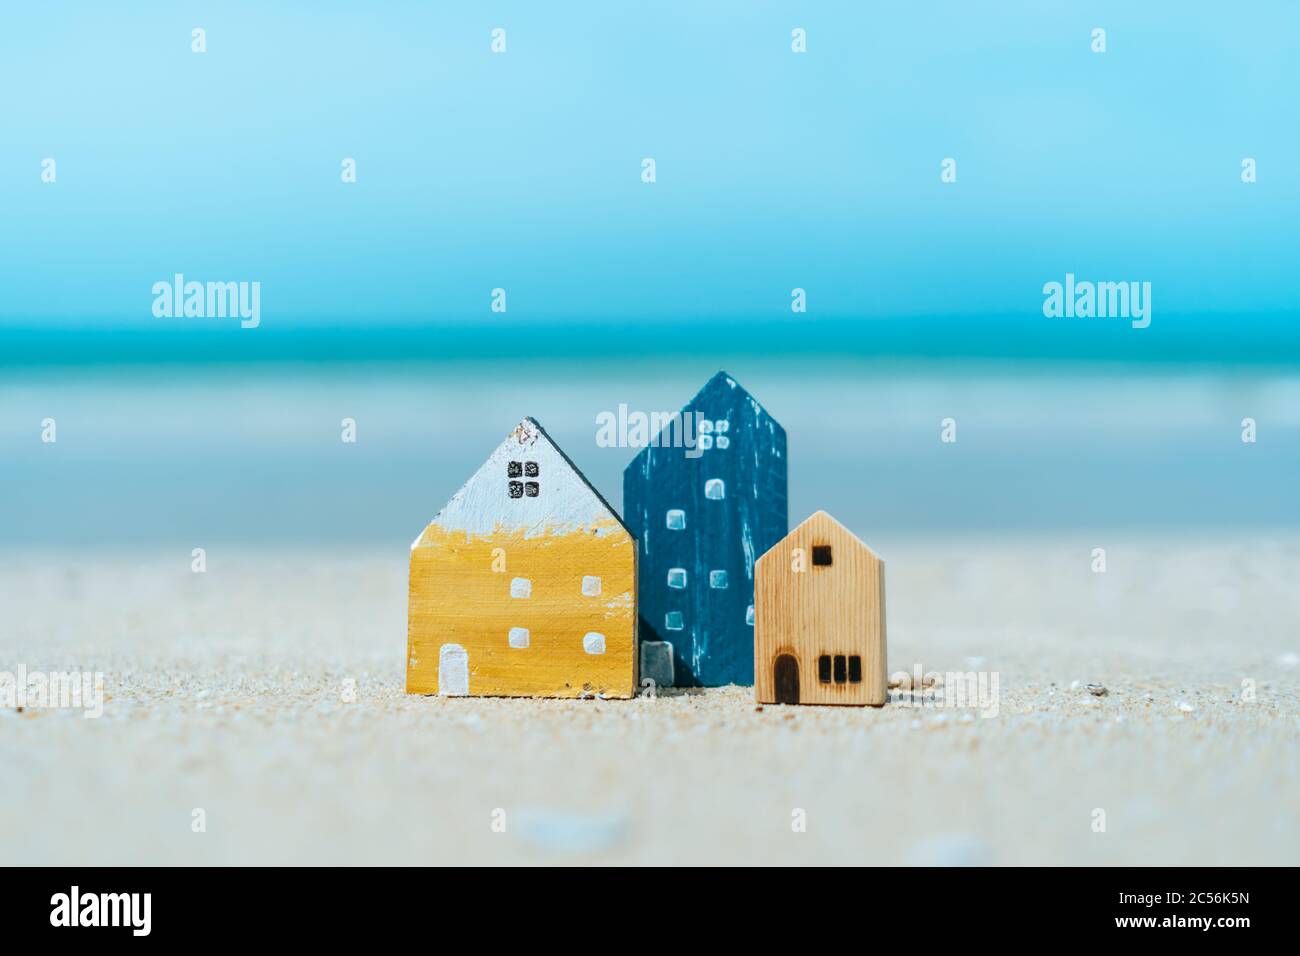 Modell eines kleinen Hauses auf Sand mit Natur Strand Hintergrund. Traum-Leben-Konzept. Stockfoto